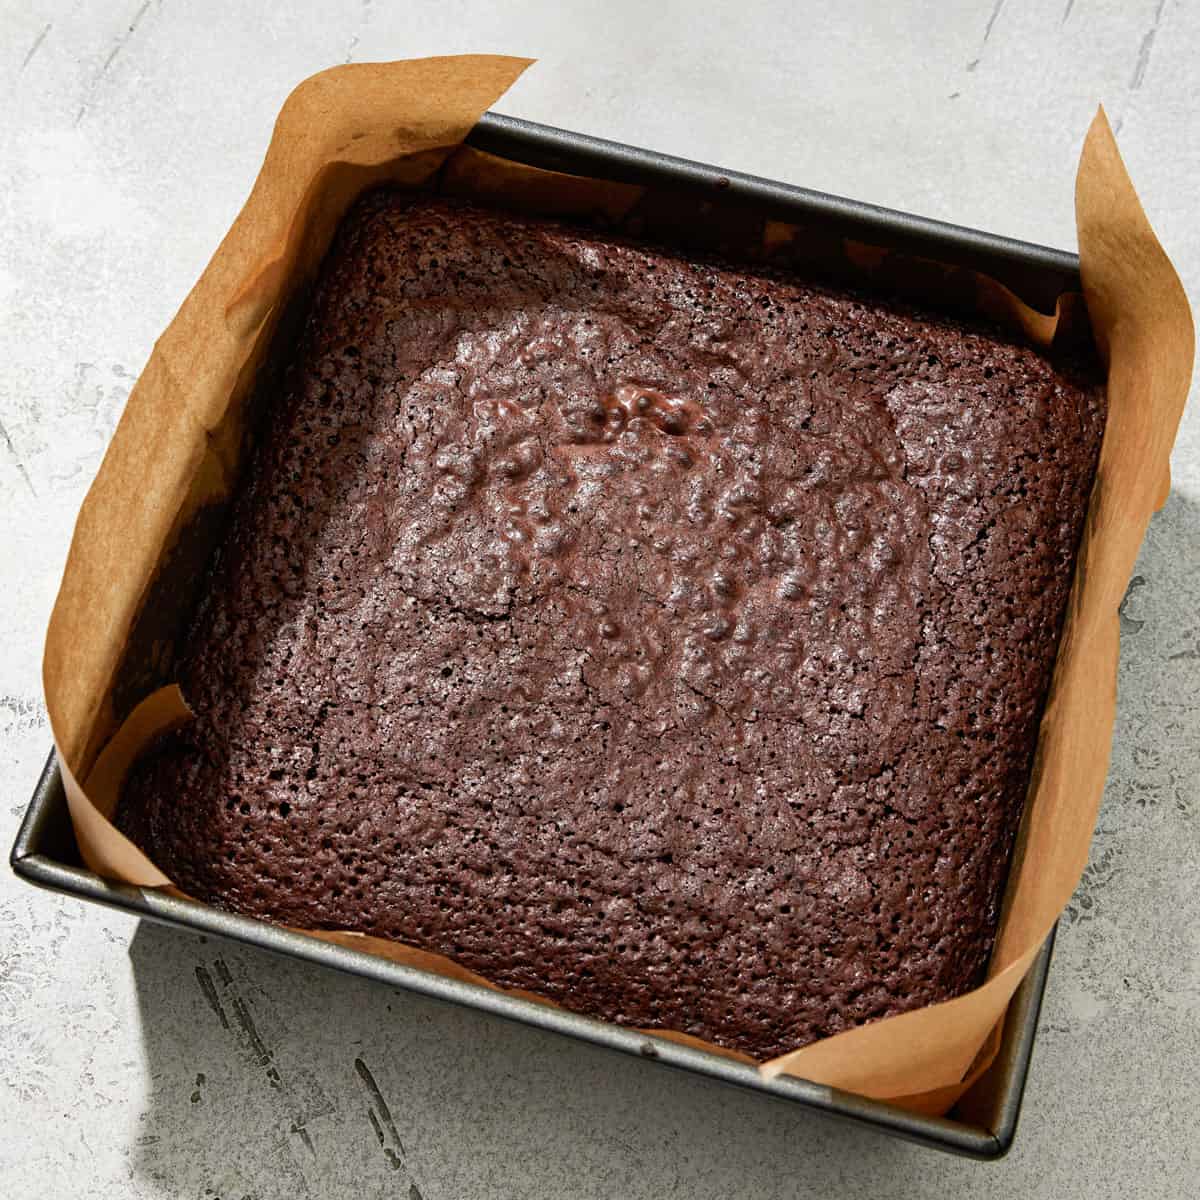 brownies in a pan.